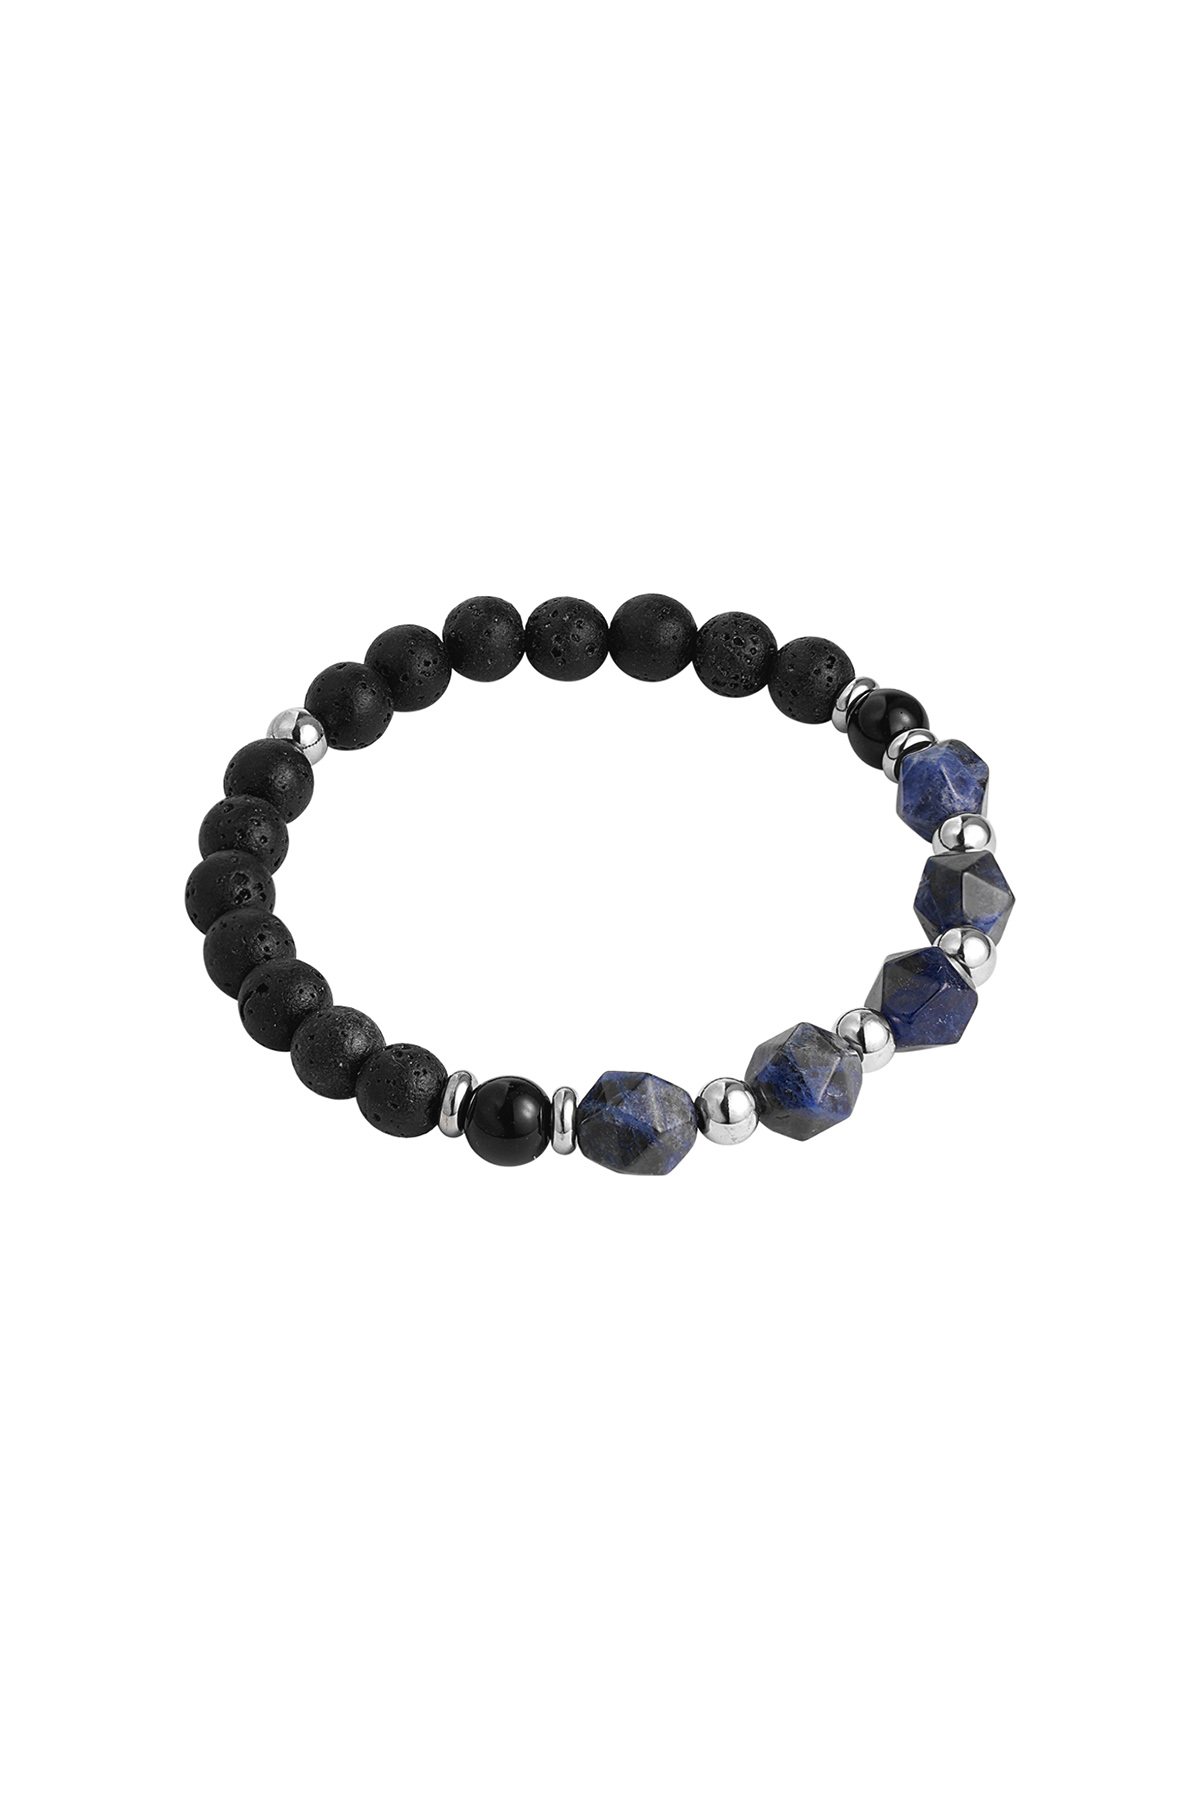 Herrenarmband Perlen schwarz/Farbe - blau